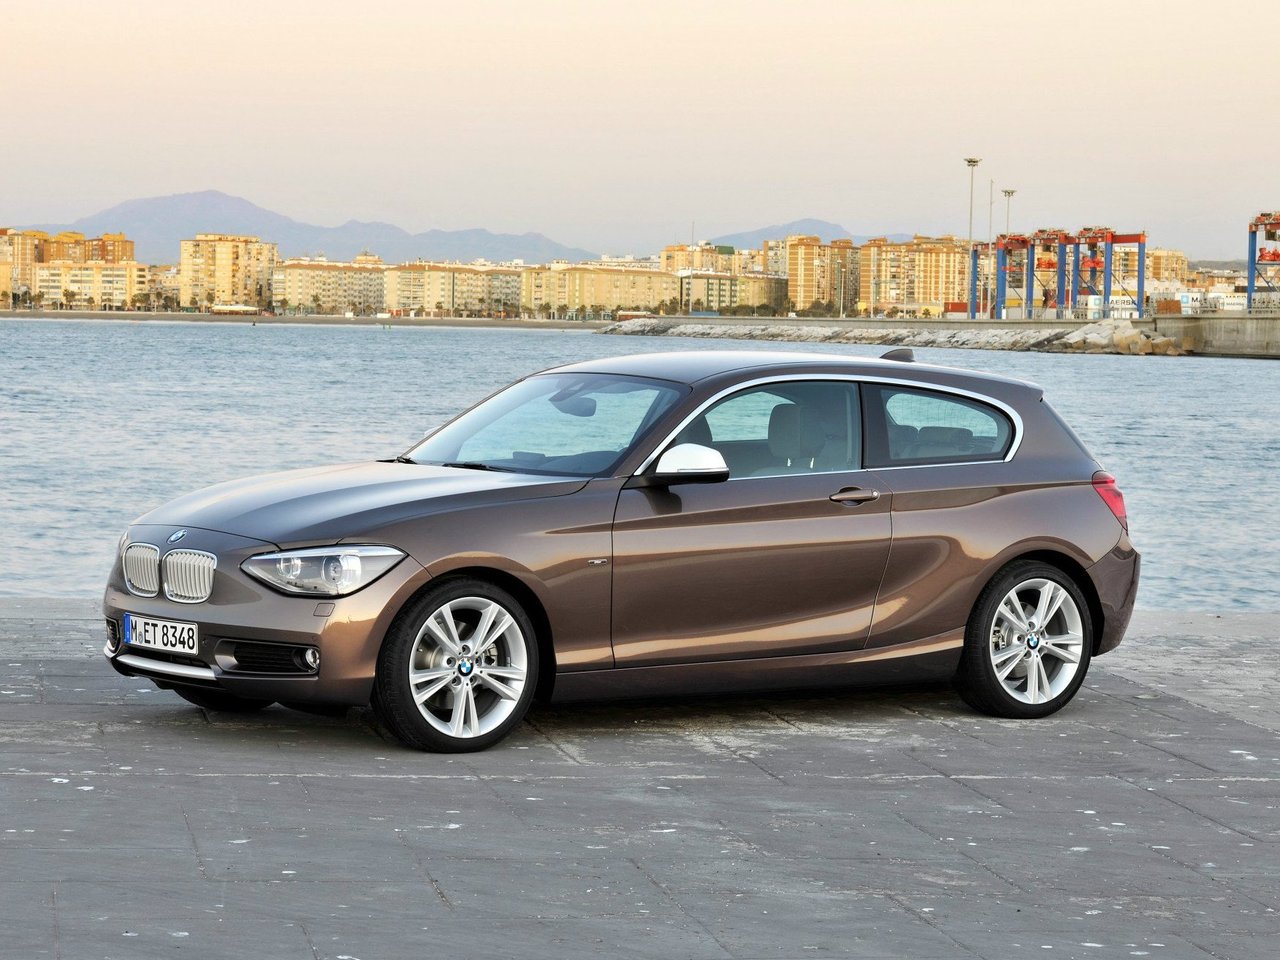 Расход газа шести комплектаций хэтчбека три двери BMW 1 серия. Разница стоимости заправки газом и бензином. Автономный пробег до и после установки ГБО.